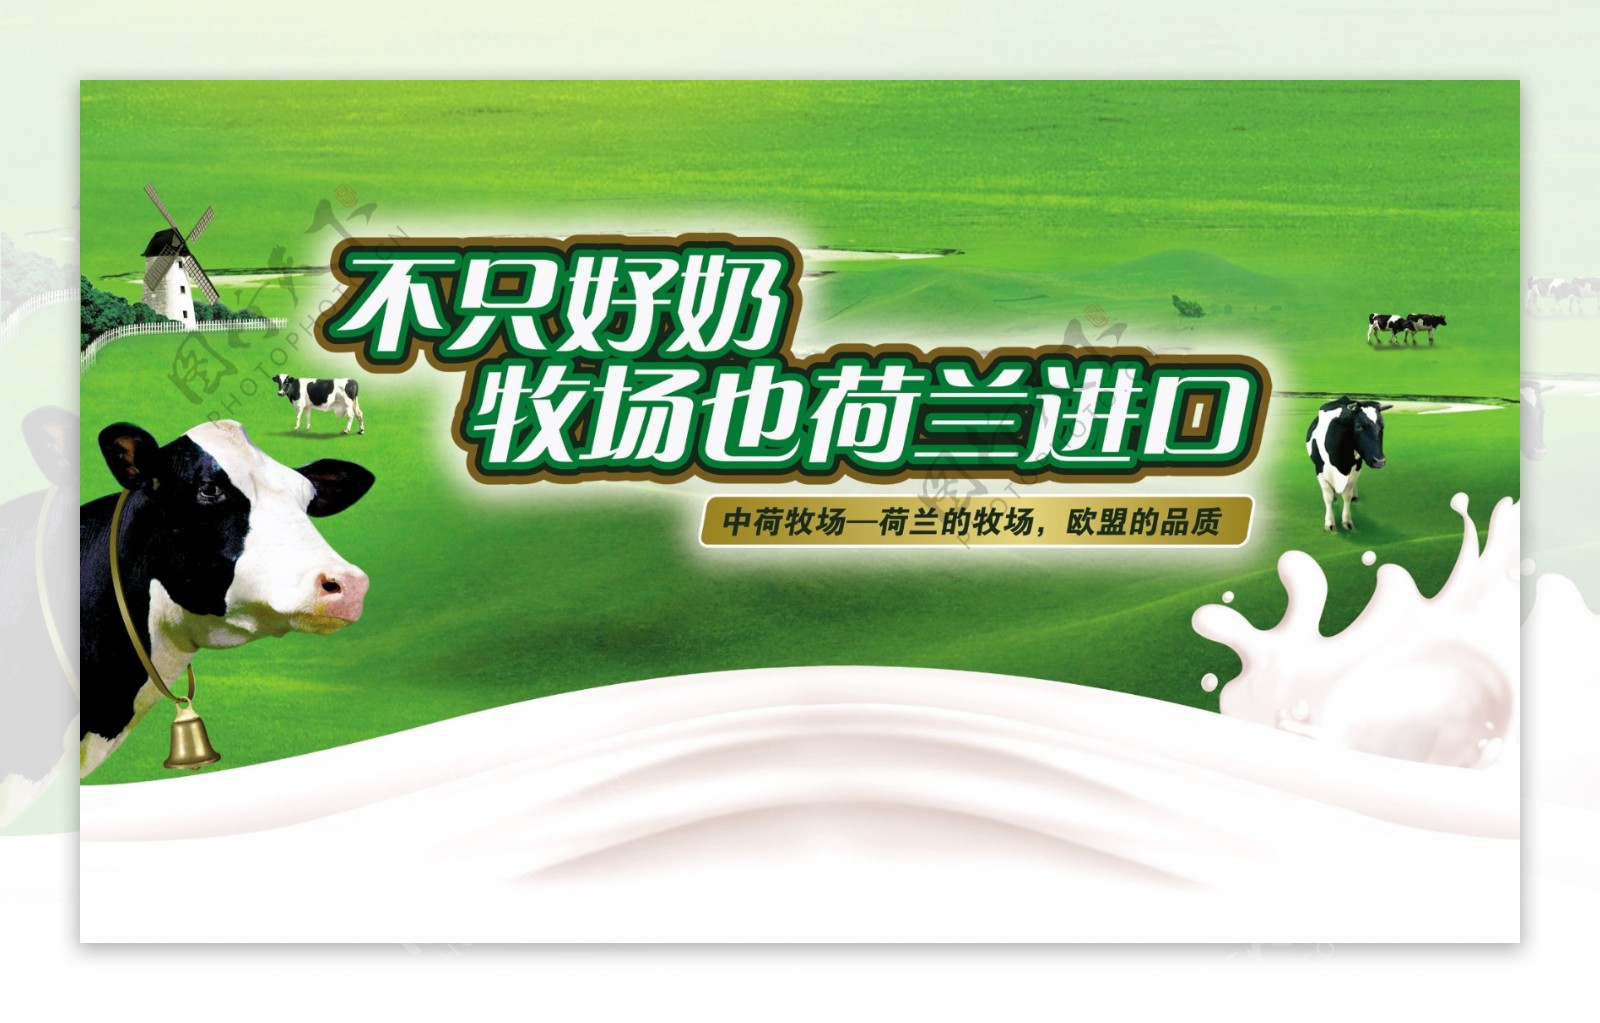 乳业广告鲜牛奶广告素材